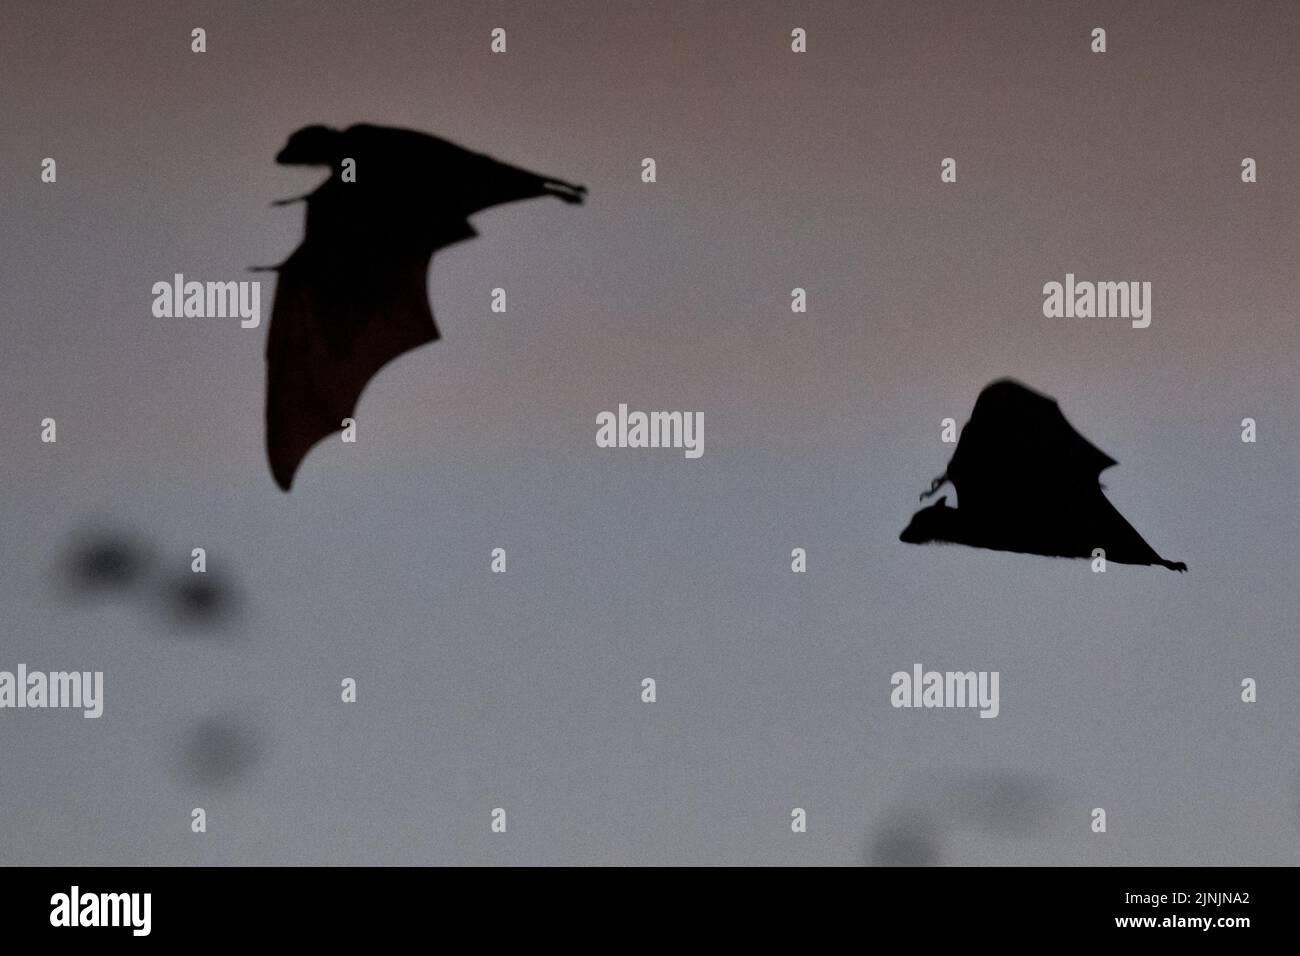 Chauve-souris à fruits noirs, renard noir volant (Pteropus alecto), chauves-souris à fruits noirs en vol dans le ciel du soir, silhouette, Australie, territoire du Nord, Nitmilu Banque D'Images